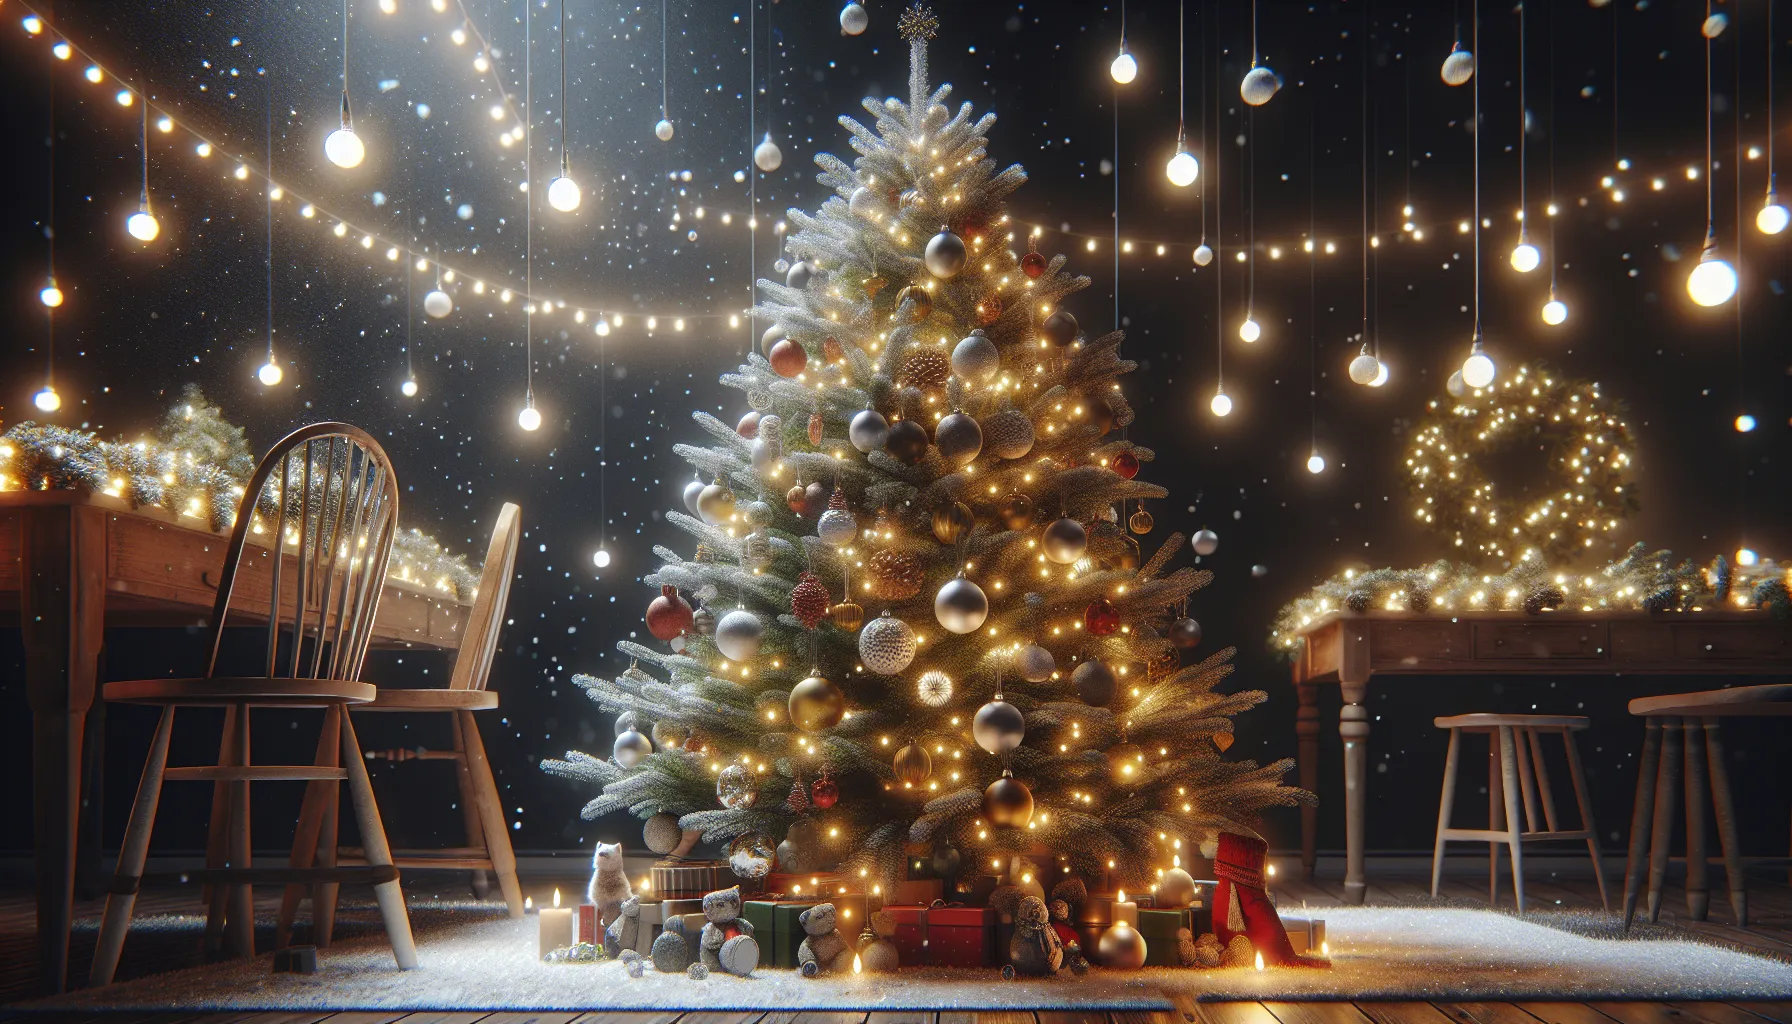 Imagen de un árbol decorado con luces y adornos navideños